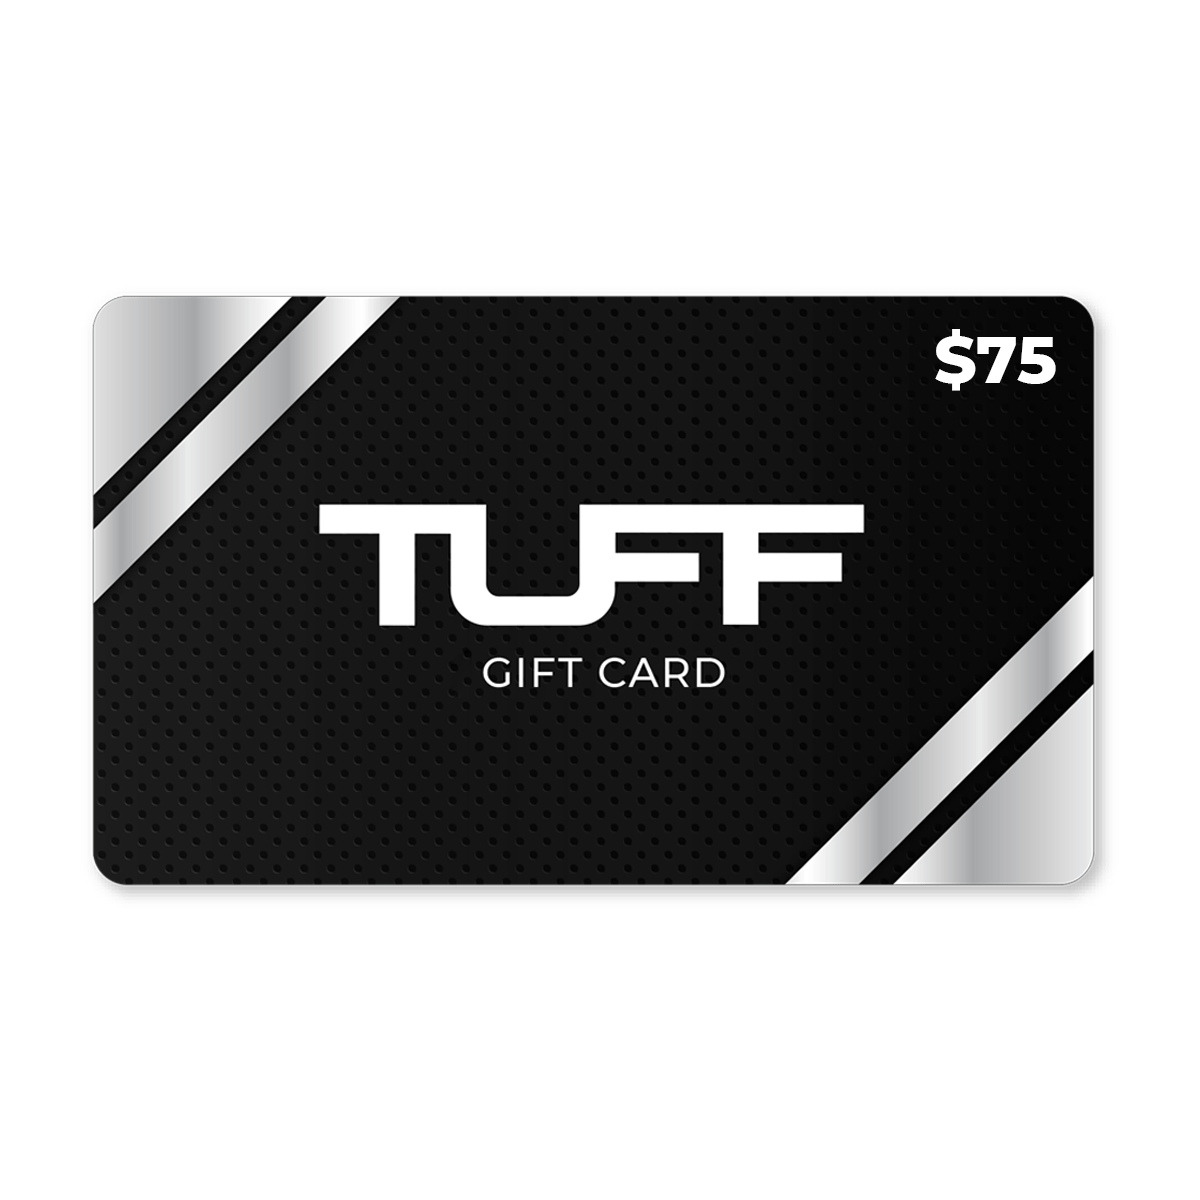 TuffWraps Gift Card $75.00 TUFF Gift Card